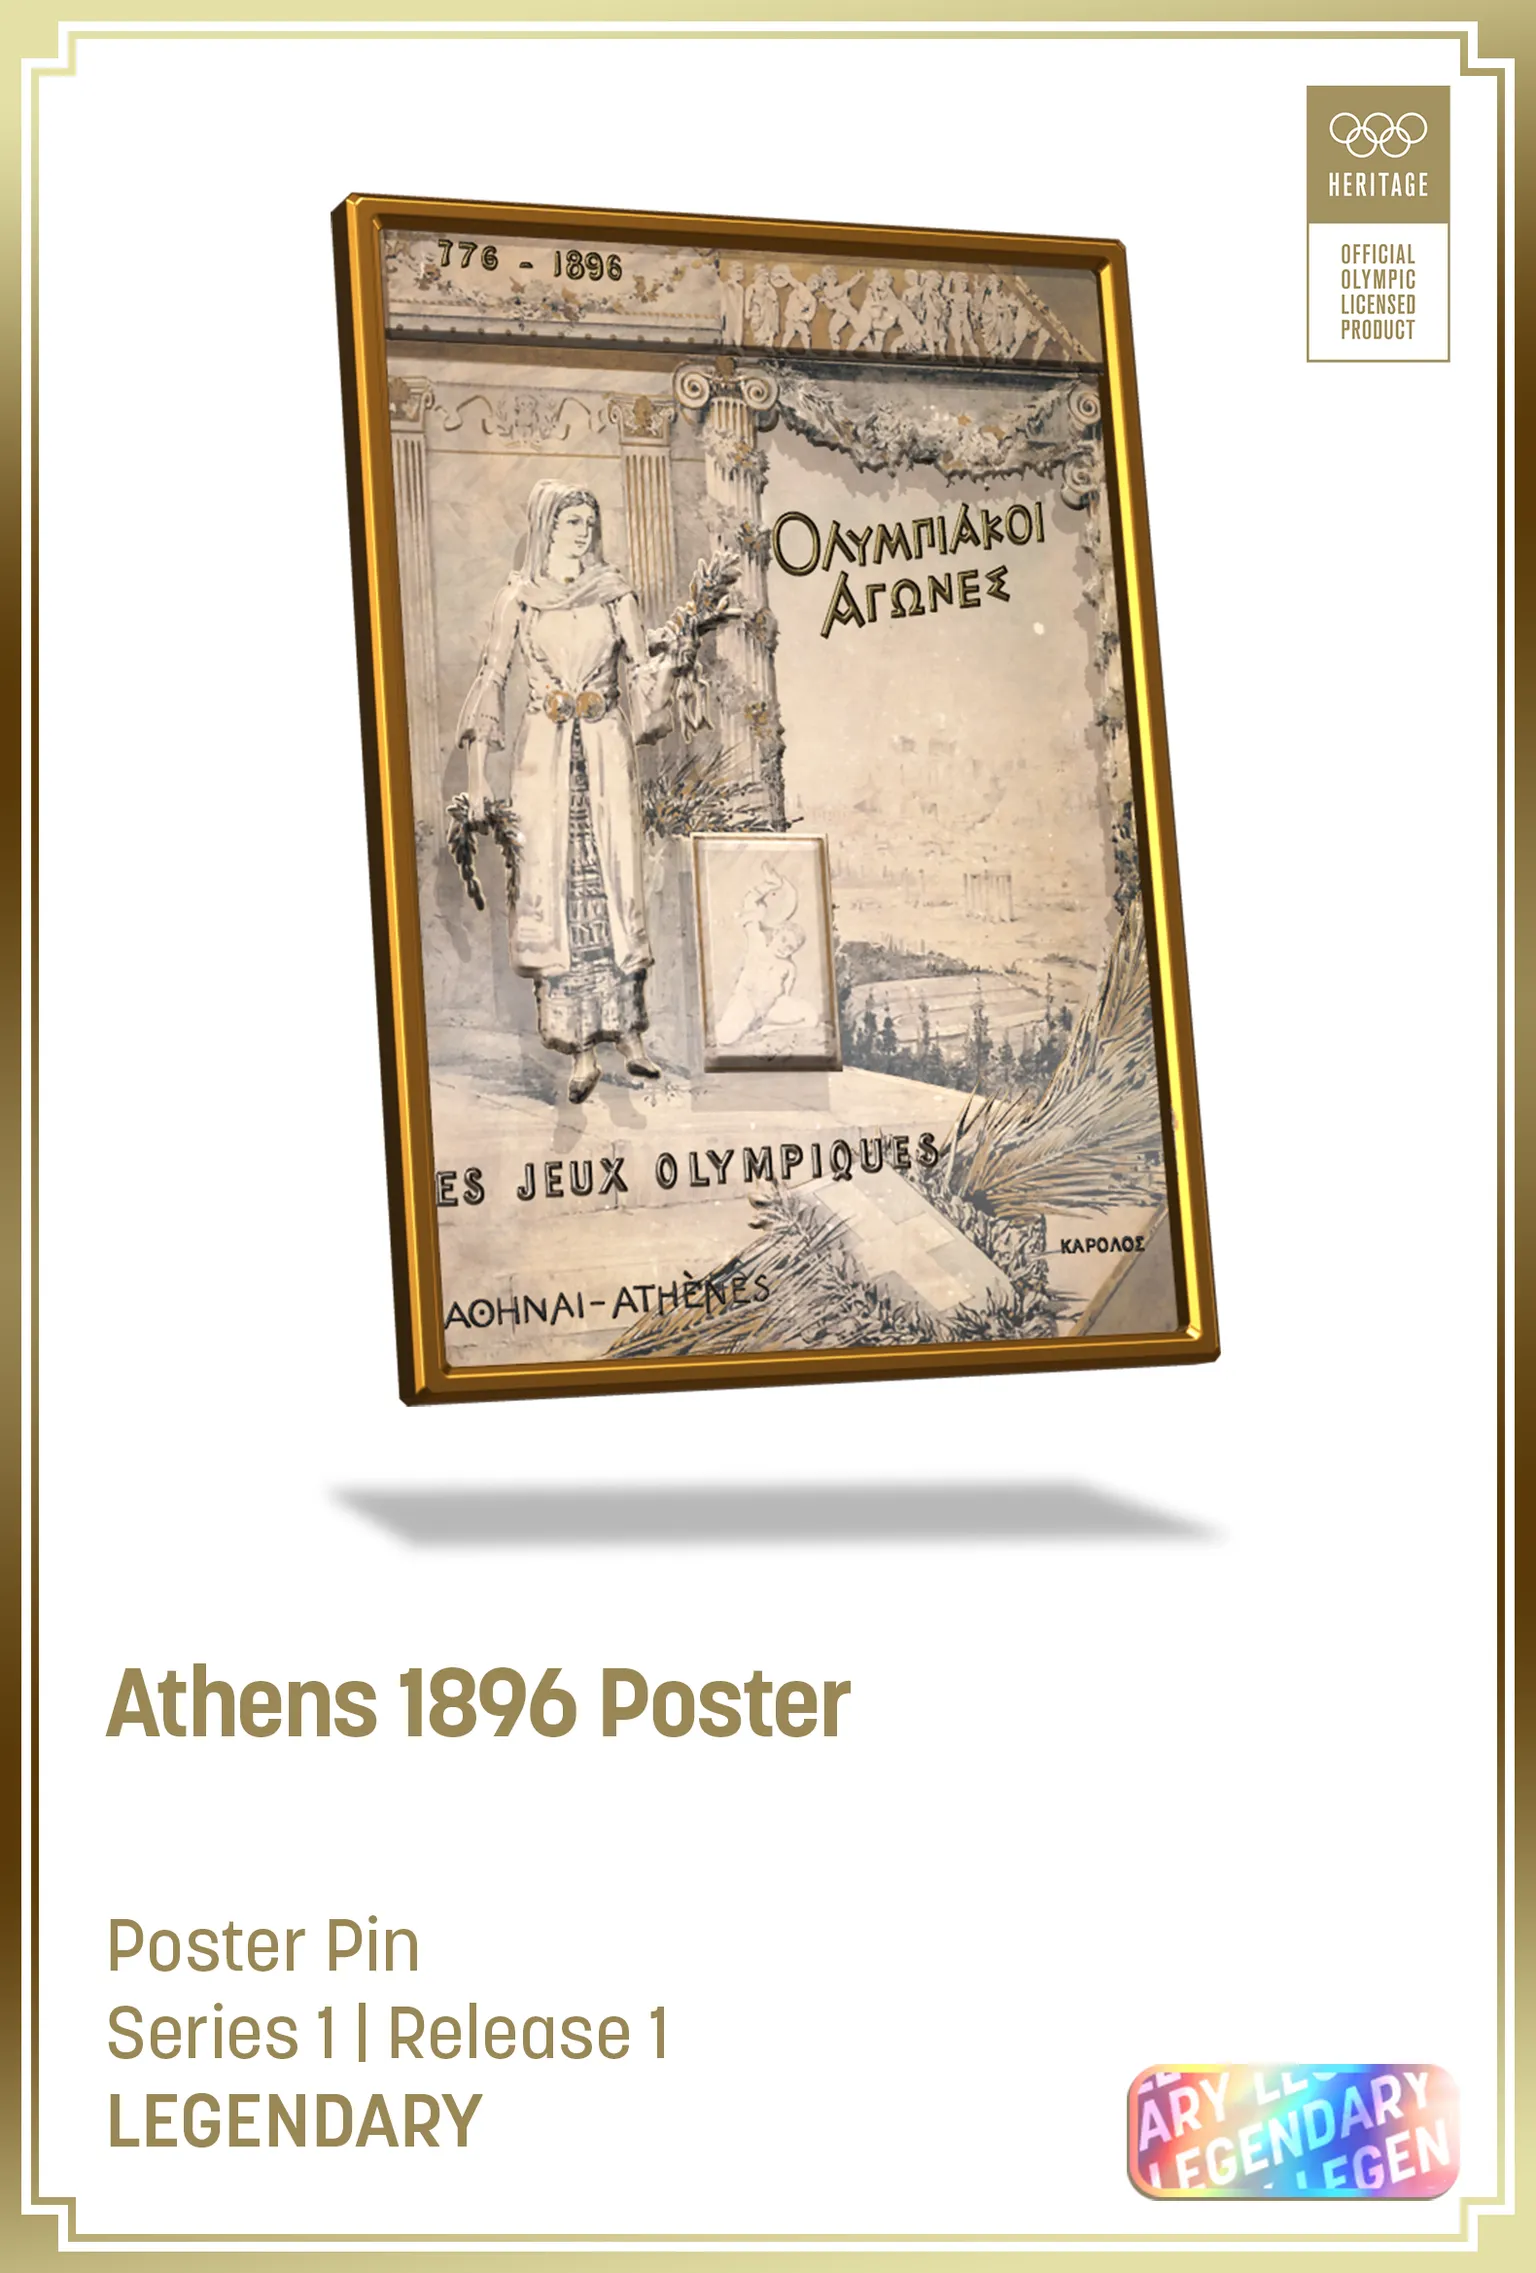 Una tarjeta digital del pin olímpico de Atenas